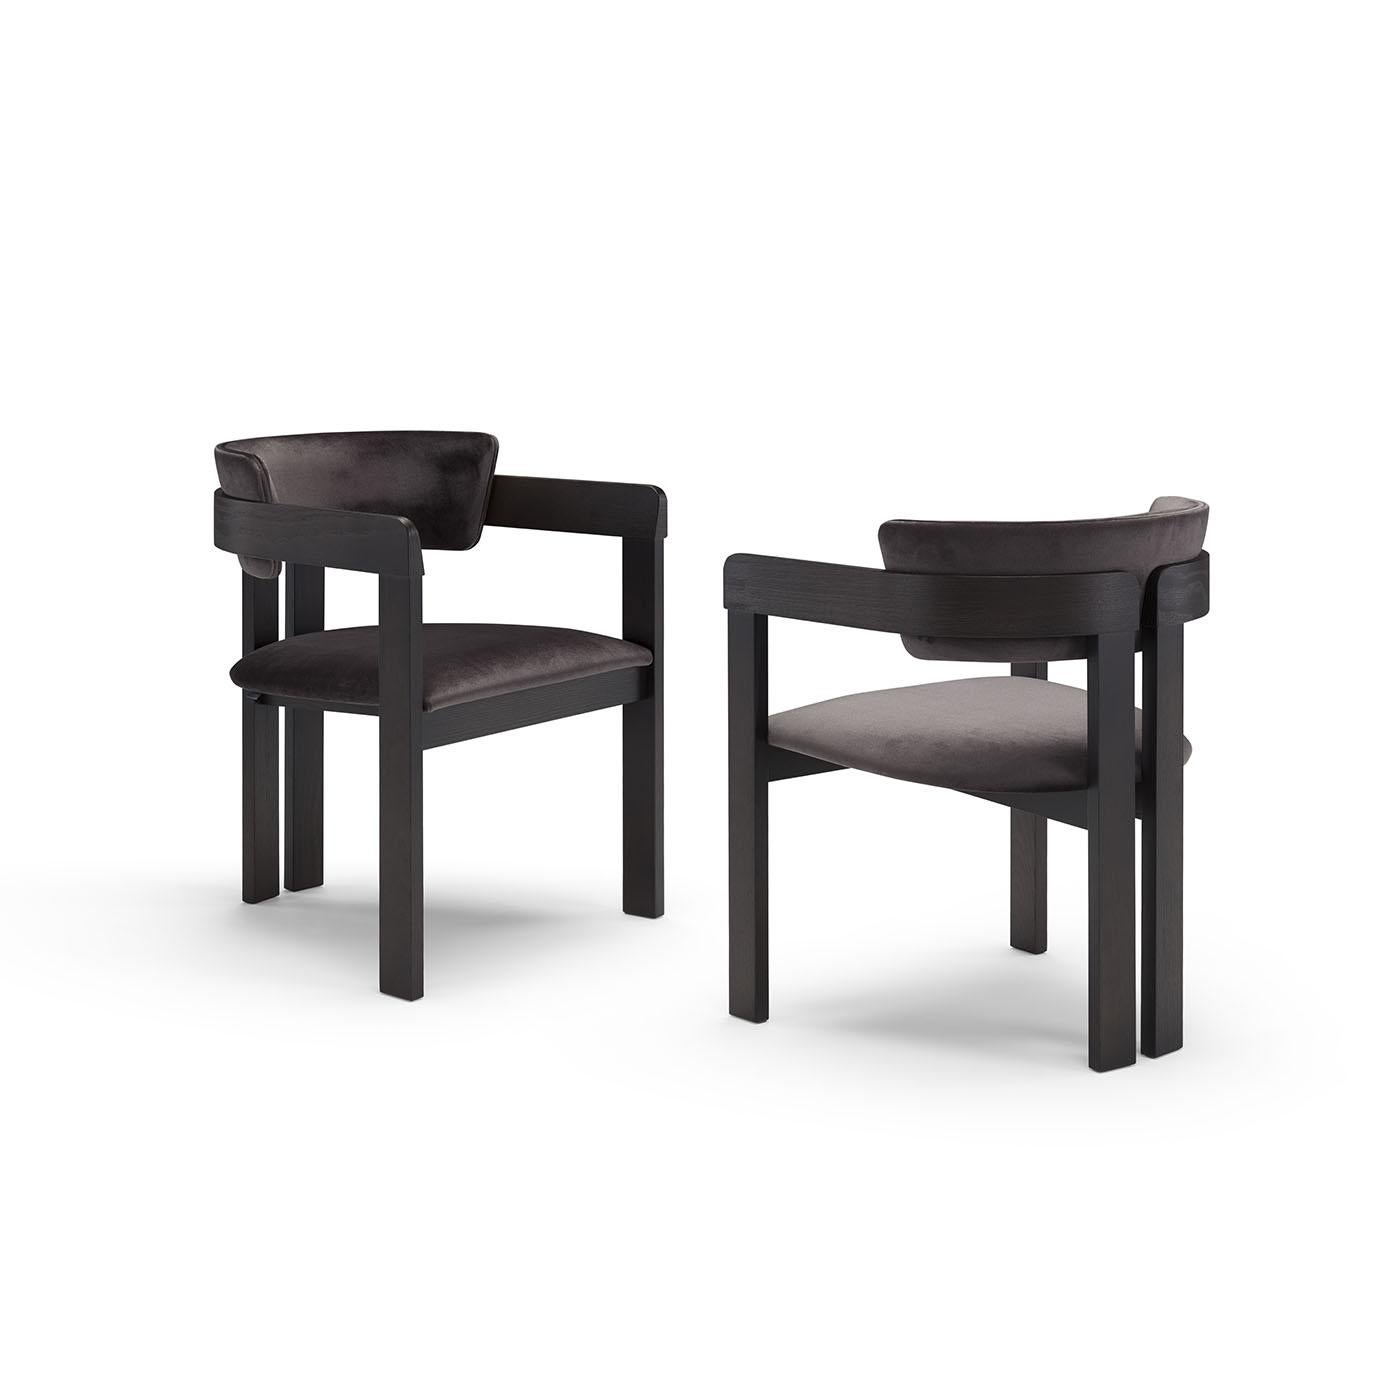 Cette chaise de la série Ines, conçue par Studio Tecnico pour Pacini & Cappellini, s'intègre parfaitement dans les décors modernes ou d'inspiration industrielle. Entièrement noire de la tête aux pieds, les courbes gracieuses de la demi-lune sont